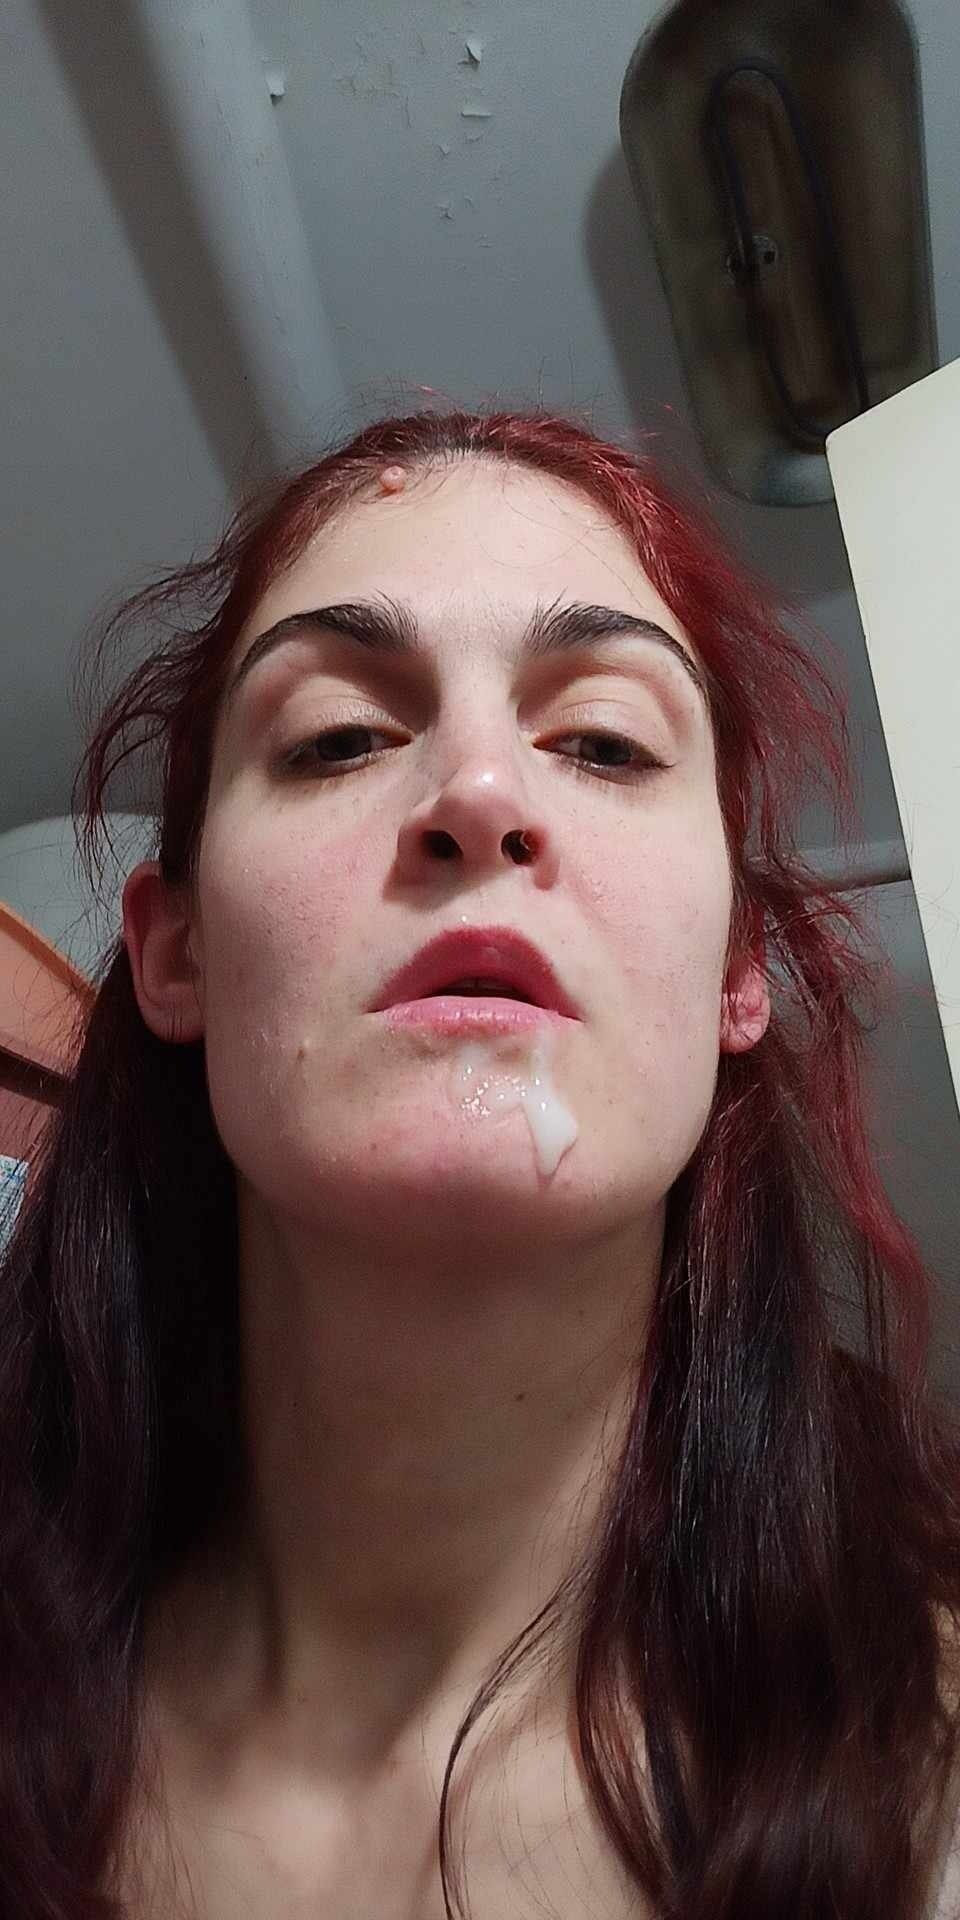 Cream face slut #3